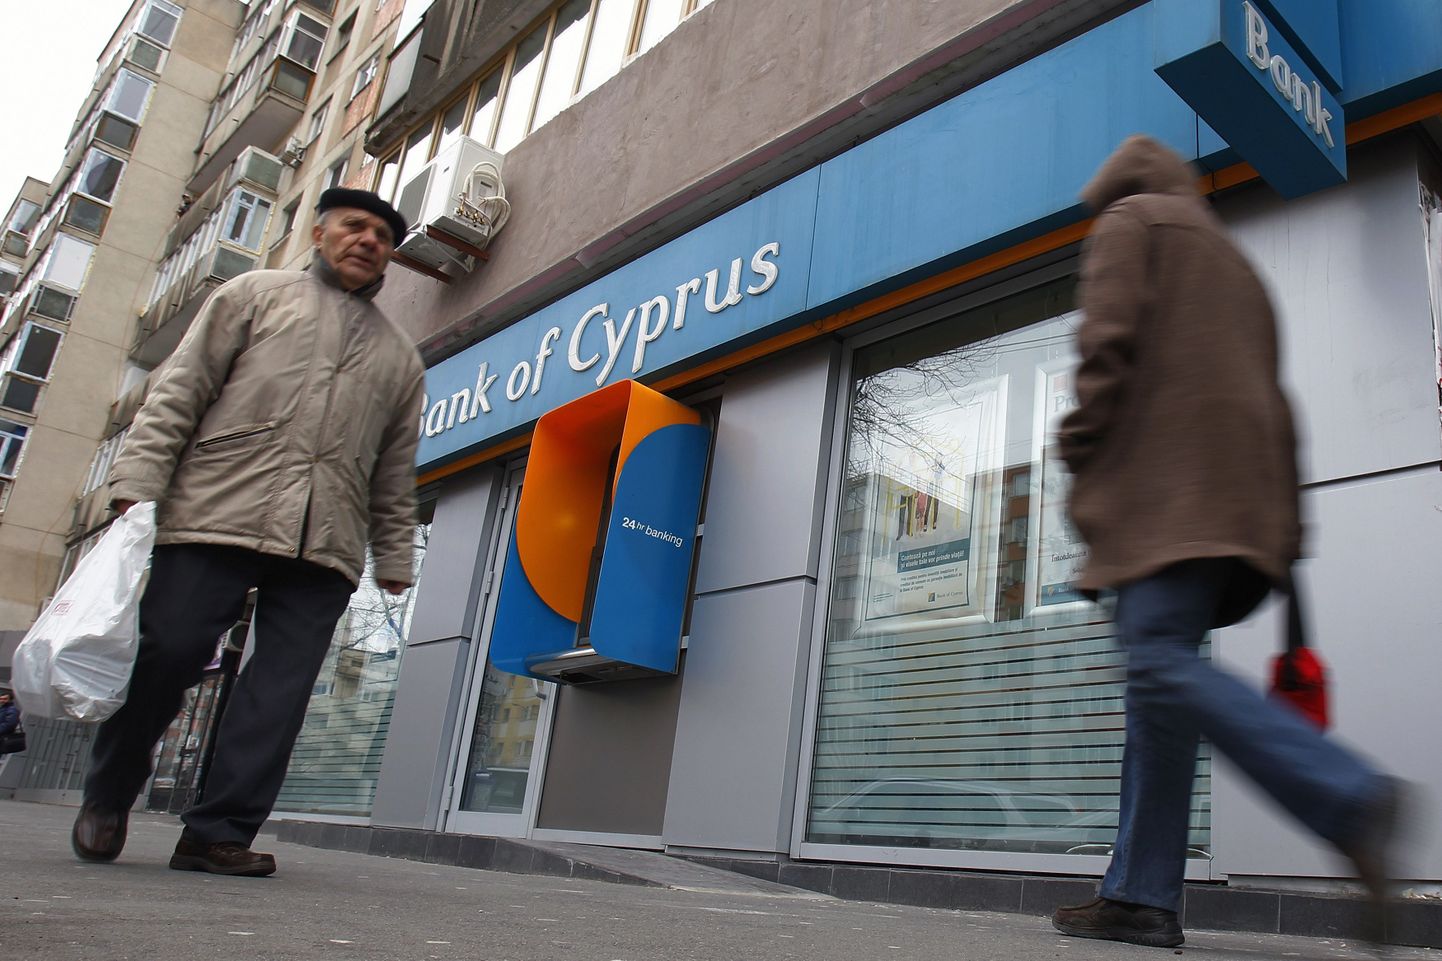 Küprose suurima panga juht astus tagasi.